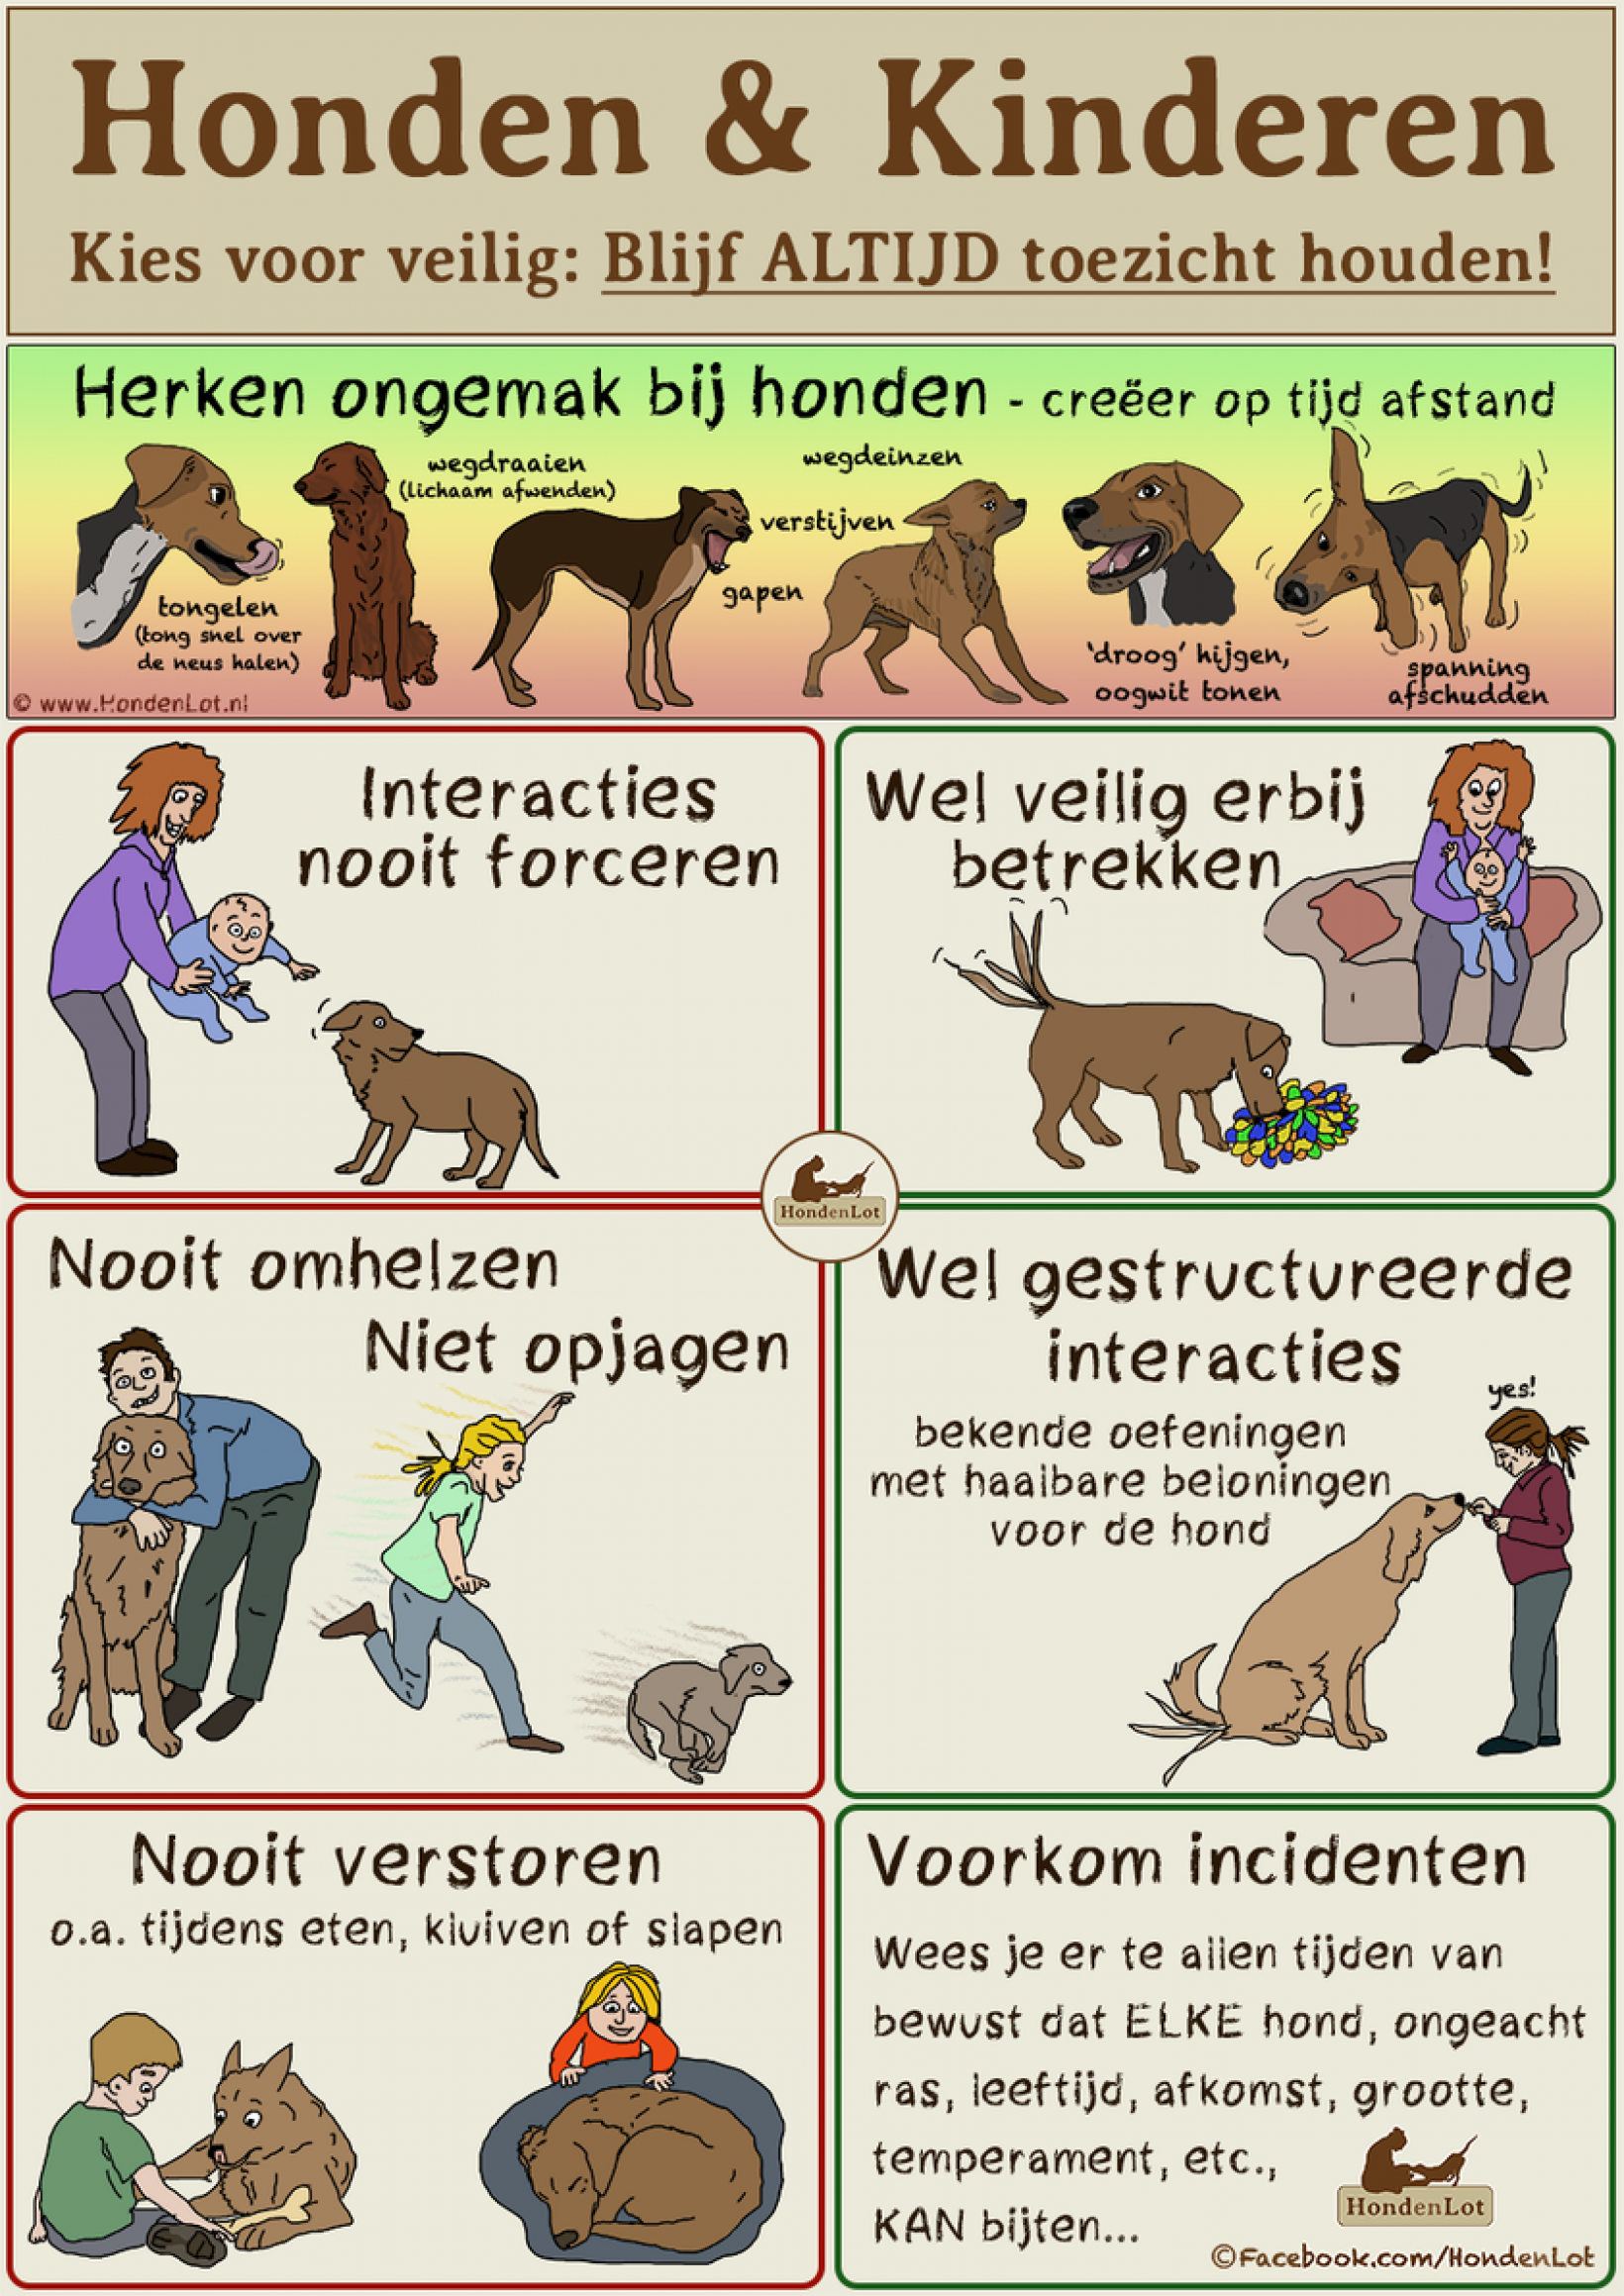 De buitenlandse hond en kinderen; voorbereiding - Verhuisdieren.nl